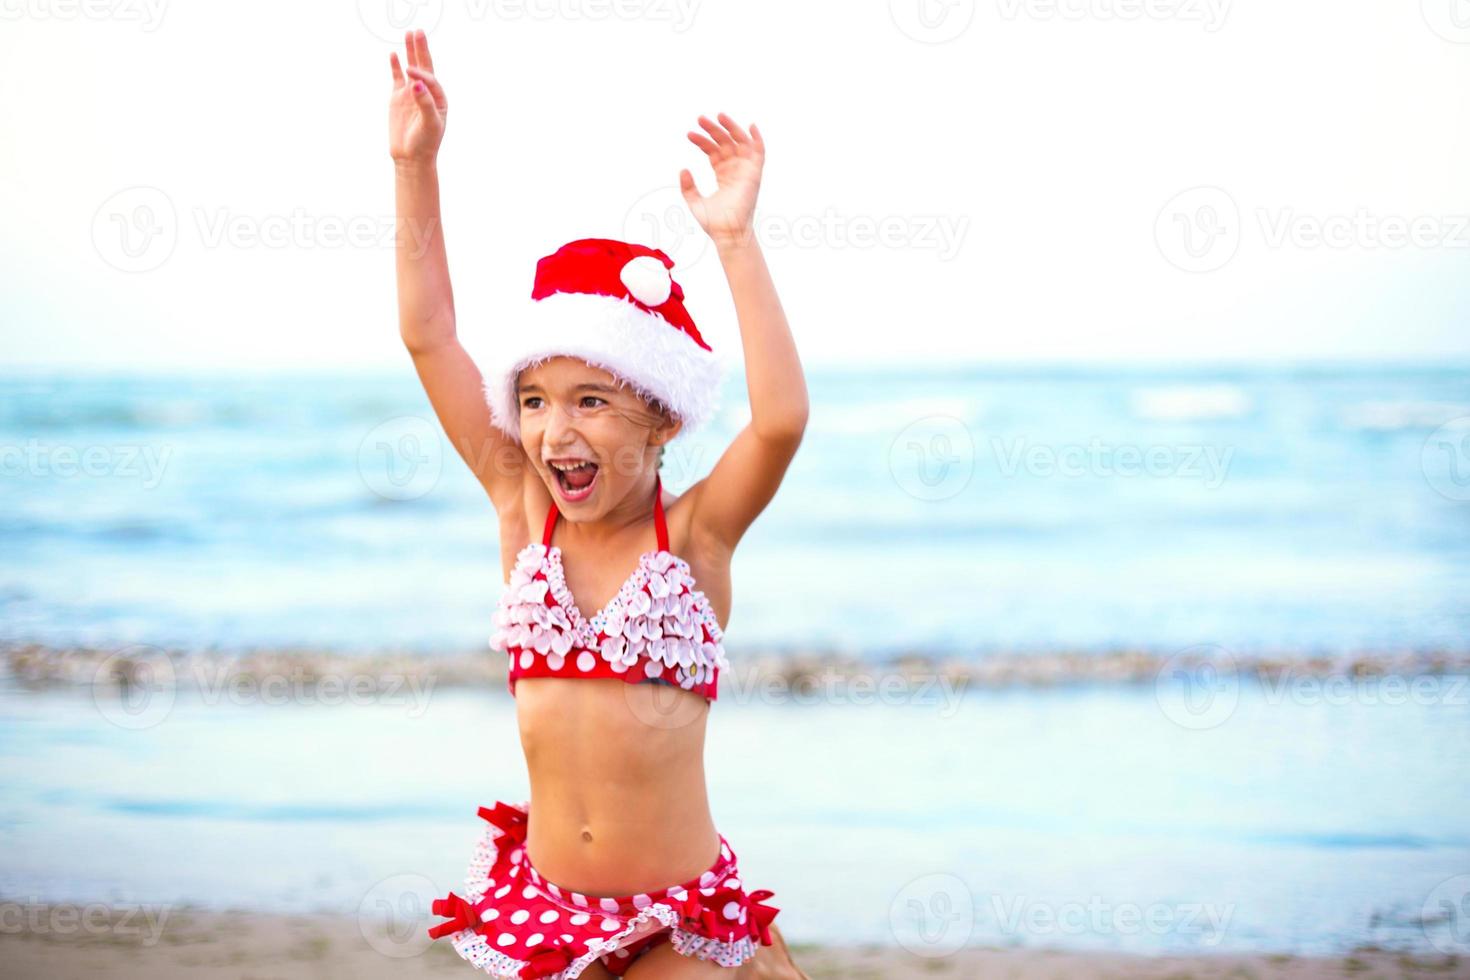 Une fillette de 5 ans en maillot de bain rouge et bonnet de noel sur la plage est heureuse, crie, saute et agite les mains avec bonheur. circuits d'hiver de noël et du nouvel an dans les pays chauds. tourisme pour des vacances sous les tropiques photo